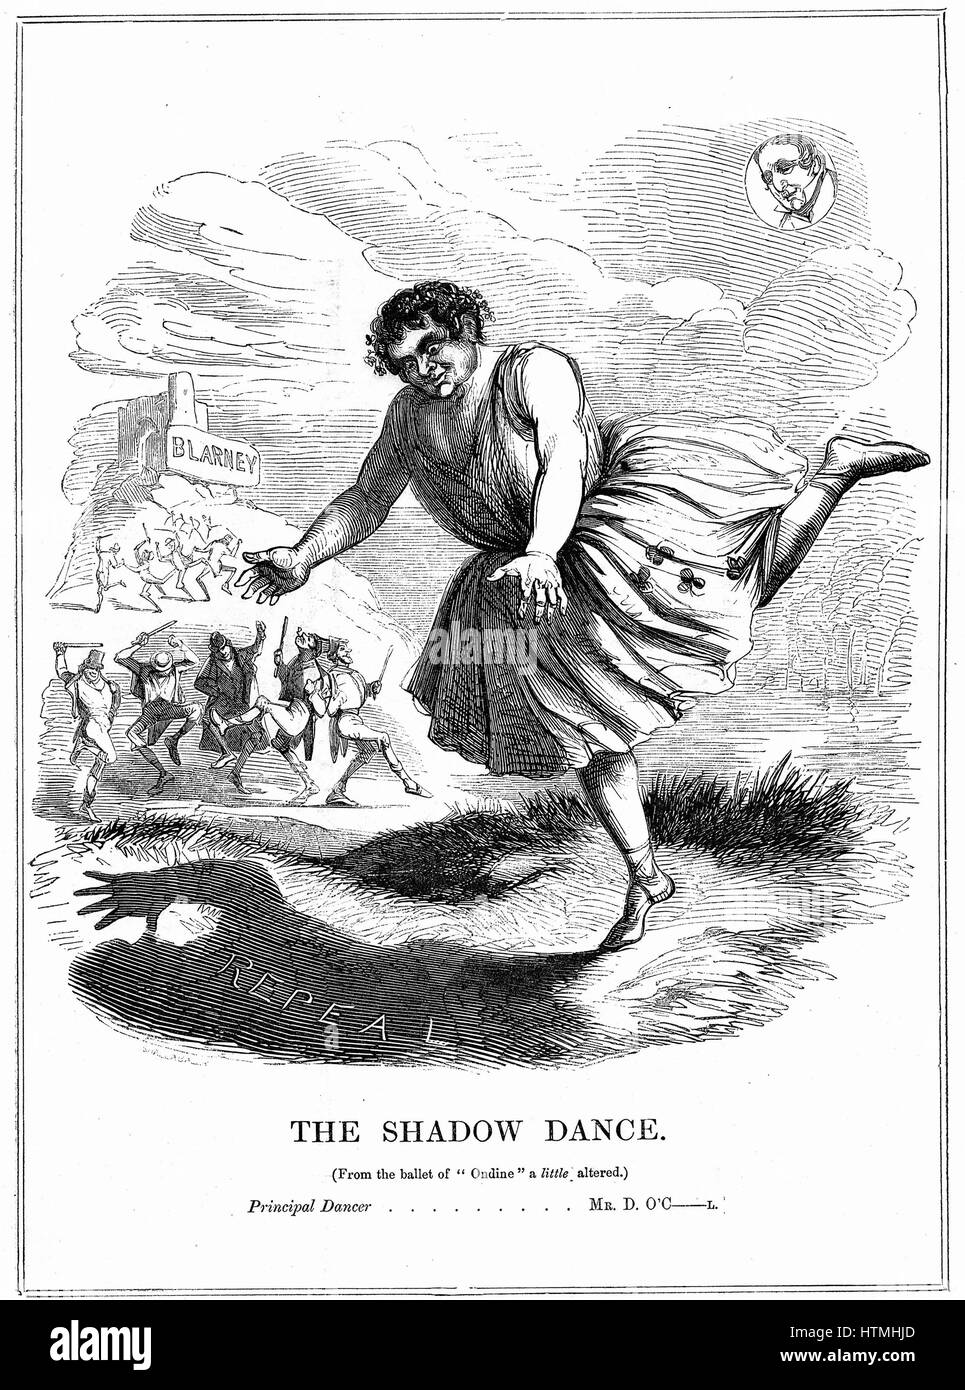 "Schattentanz" Daniel O'Connell (1775-1847) "Der Befreier", irischer Politiker, Führer der Aufhebung (der Union mit Großbritannien) Bewegung, als ein Mann von wenig Stoff, aber mit der Gabe von Wörtern, die Blarney geküsst haben Stein dargestellt. Cartoon aus "Punch", London, 1843. Gravur Stockfoto